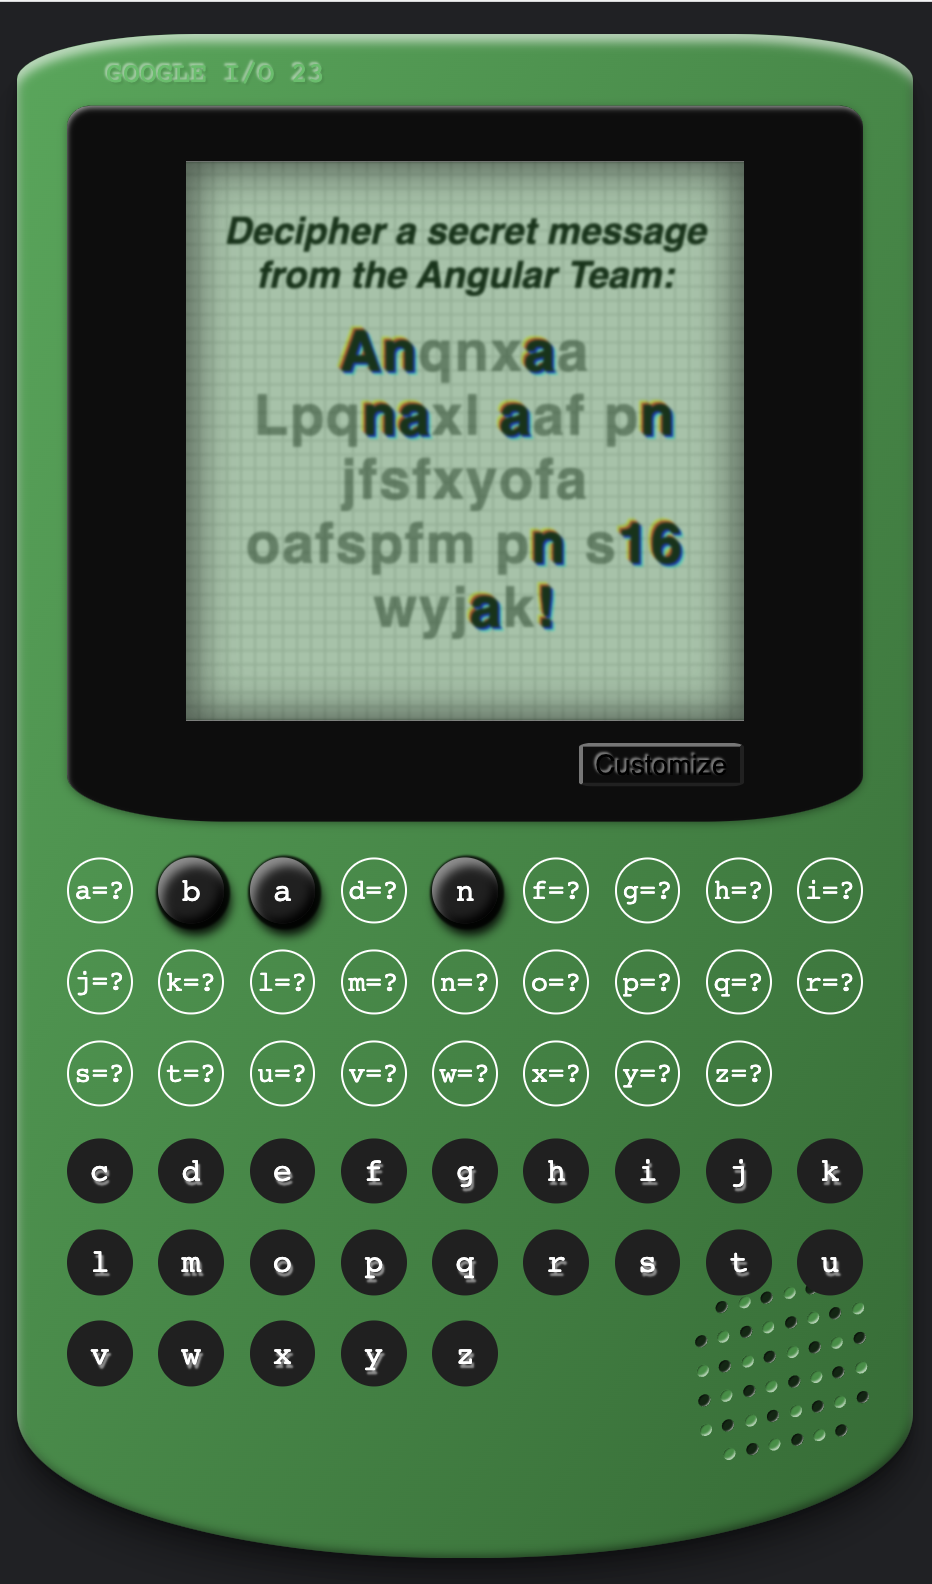 Trò chơi Angular Cypher theo phong cách máy chơi trò chơi màu xanh lục cổ điển, với thông điệp ẩn trên màn hình &#39;Anqnxaa Lpcnaxl aaf pn jfafxyofa aofapfm pn a16 wyjak!&#39;